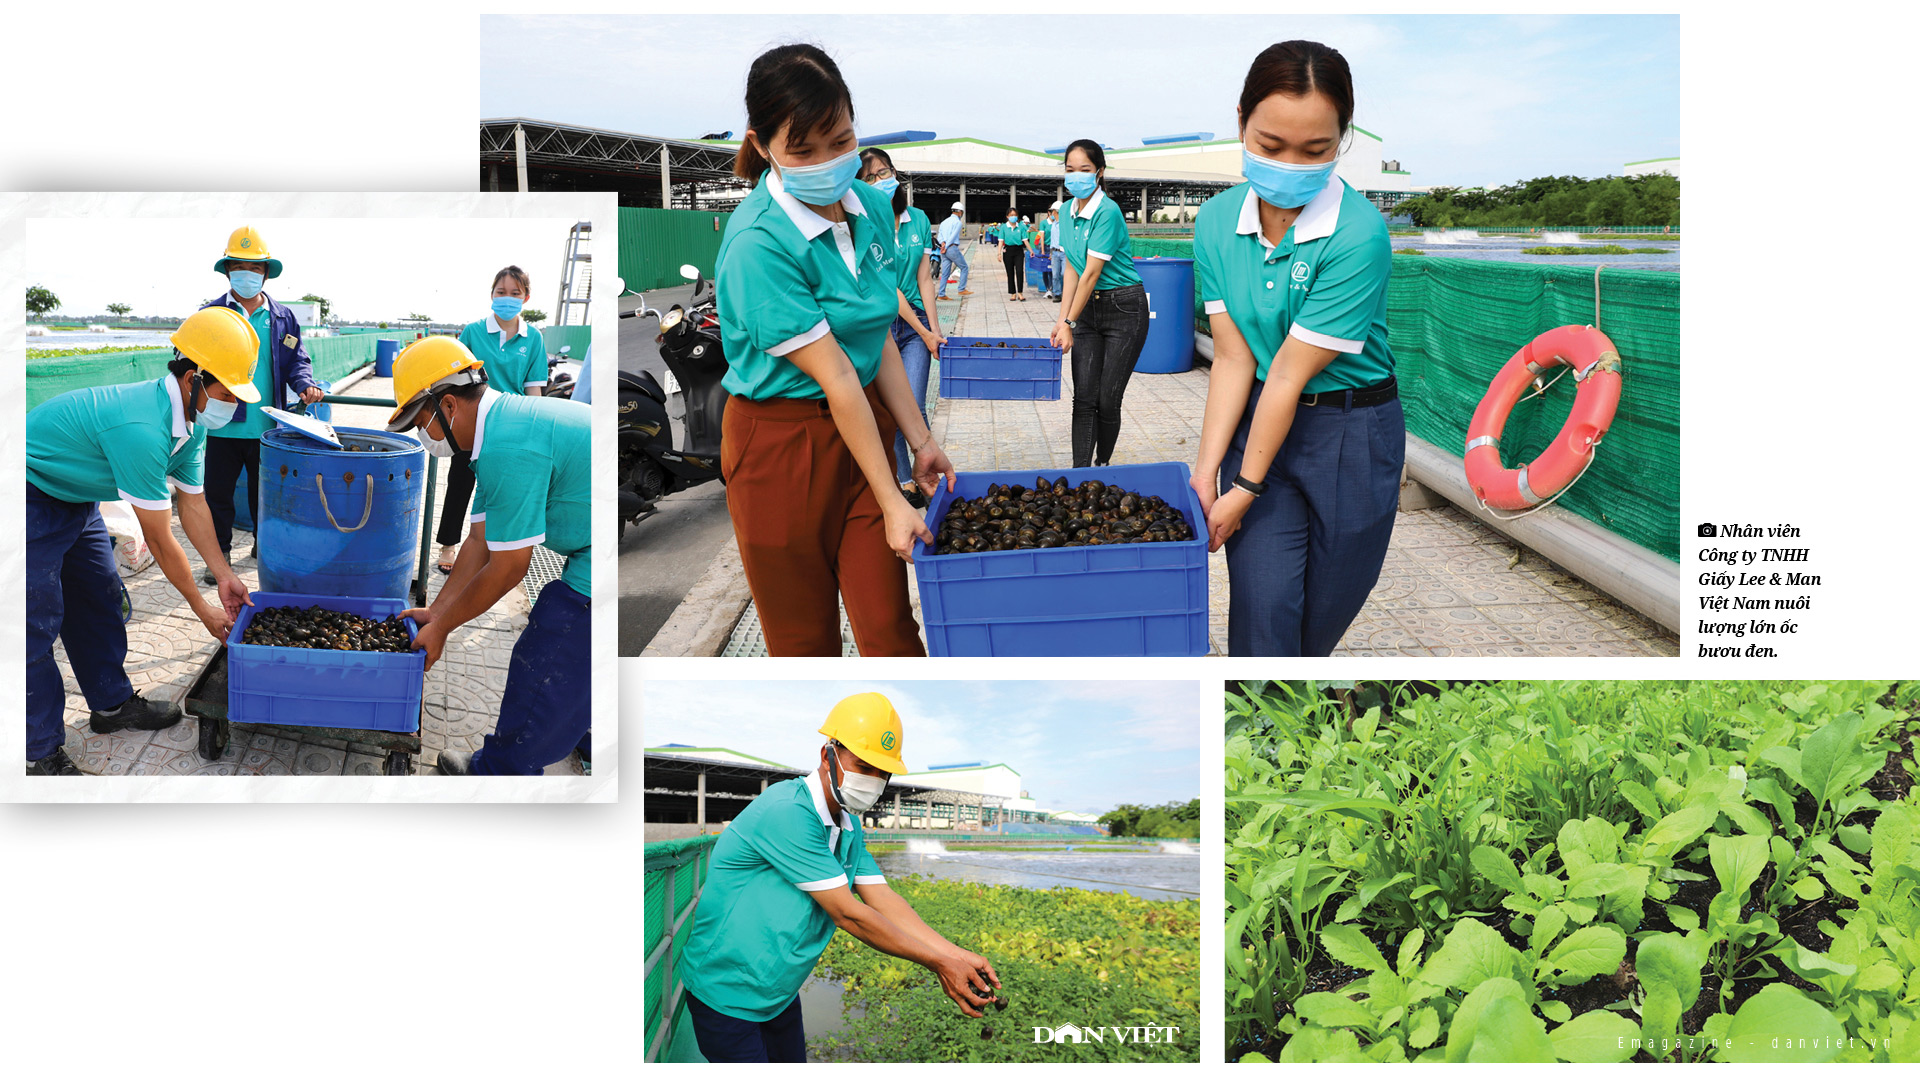 Công ty Giấy Lee & Man Việt Nam:  Mô hình “nông trại xanh” làm xanh hóa không gian công nghiệp   - Ảnh 3.